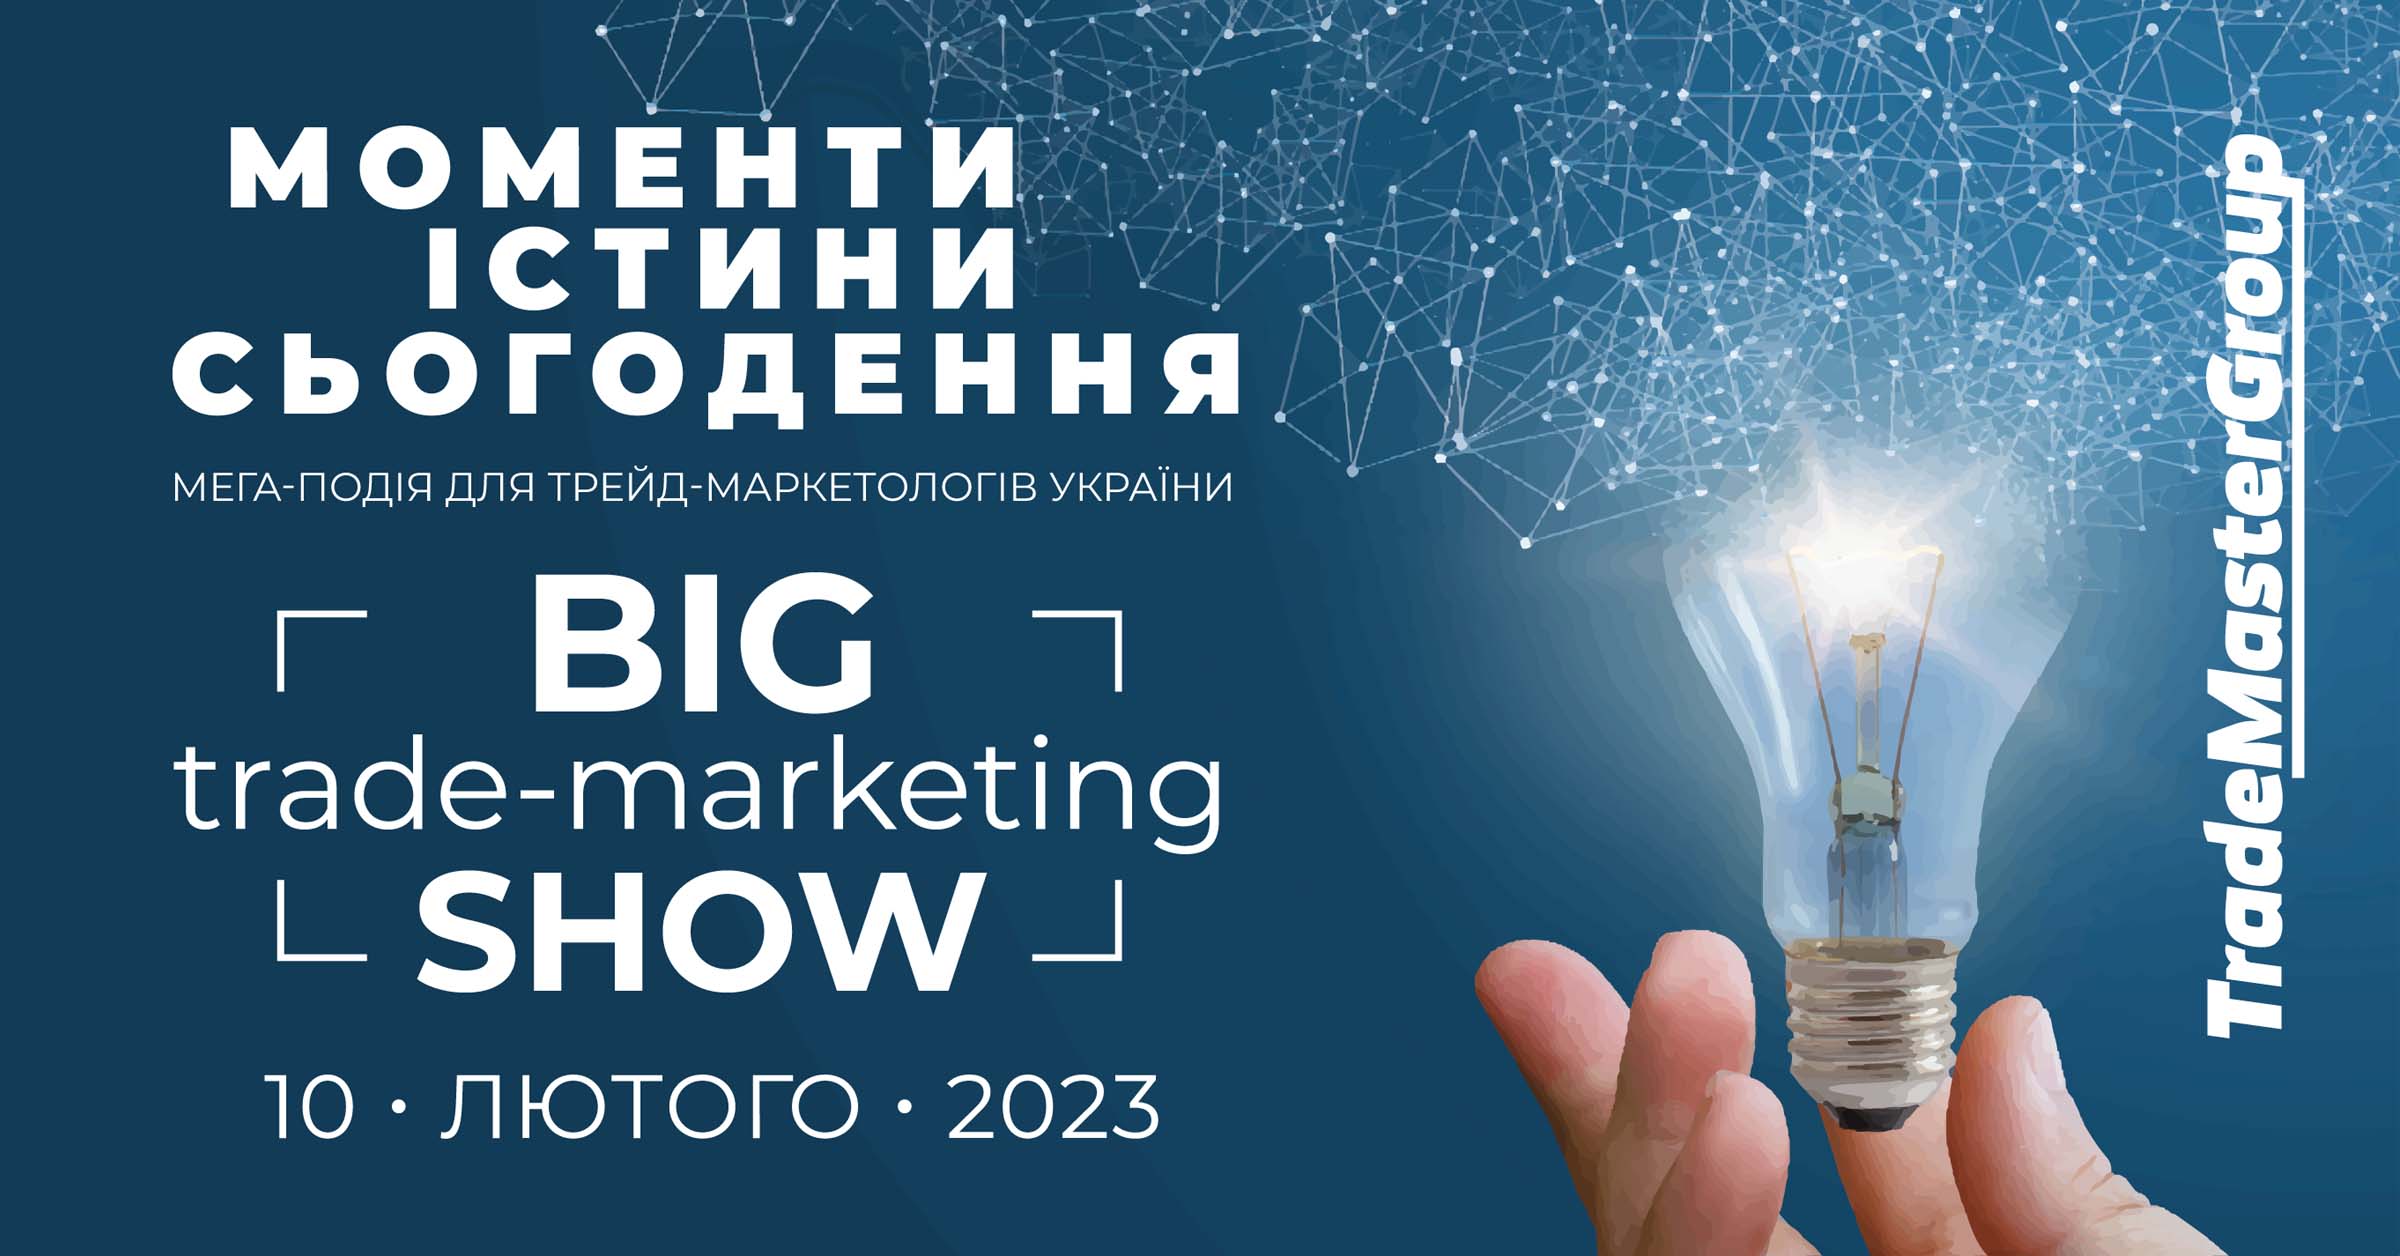 Big Trade-Marketing Show-2023: Моменти істини сьогодення 